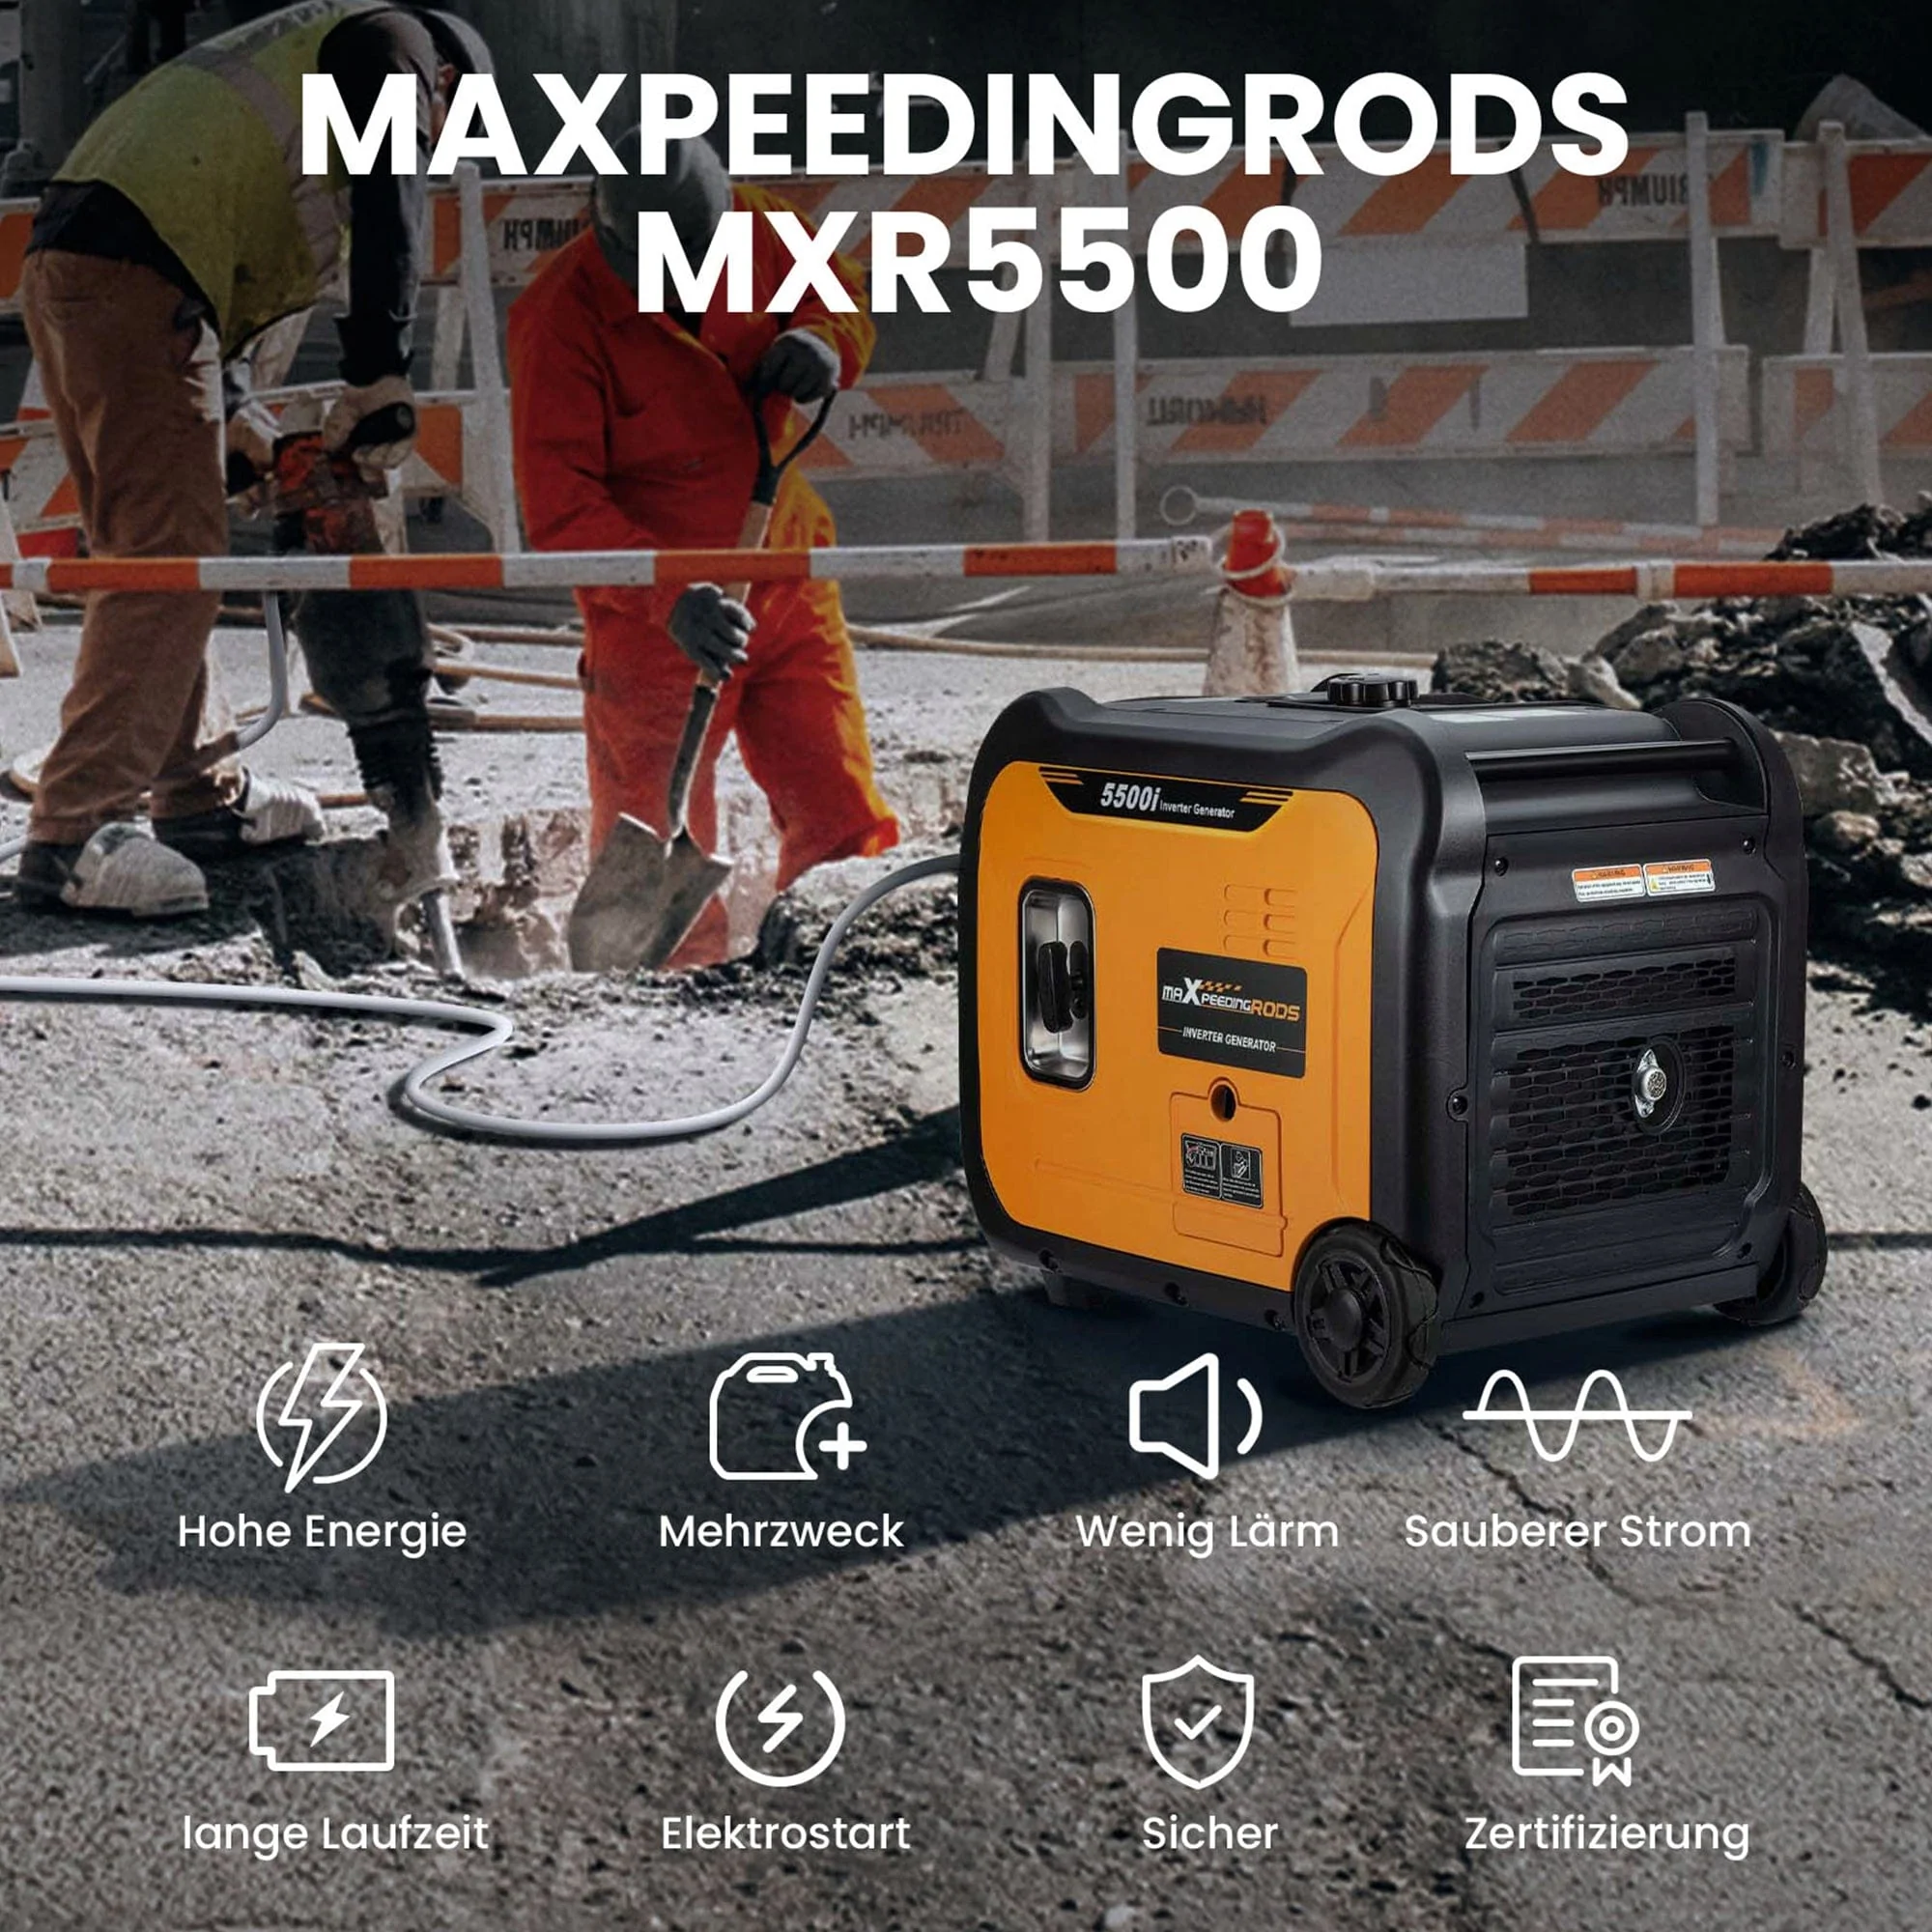   MaXpeedingRods MXR5500